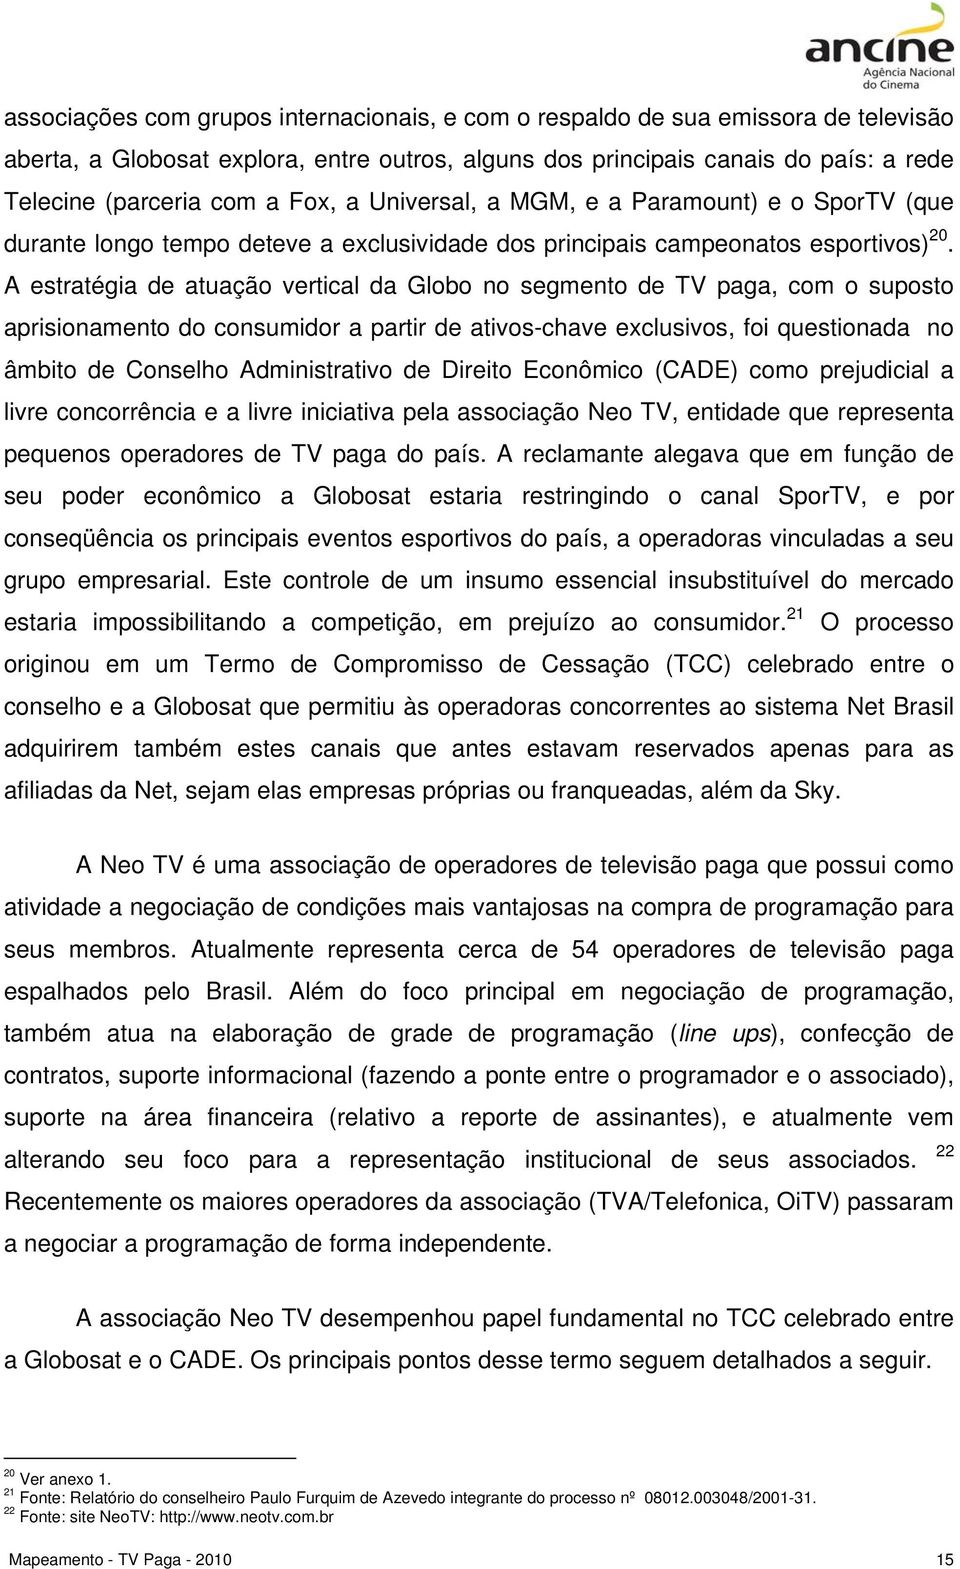 A estratégia de atuação vertical da Globo no segmento de TV paga, com o suposto aprisionamento do consumidor a partir de ativos-chave exclusivos, foi questionada no âmbito de Conselho Administrativo